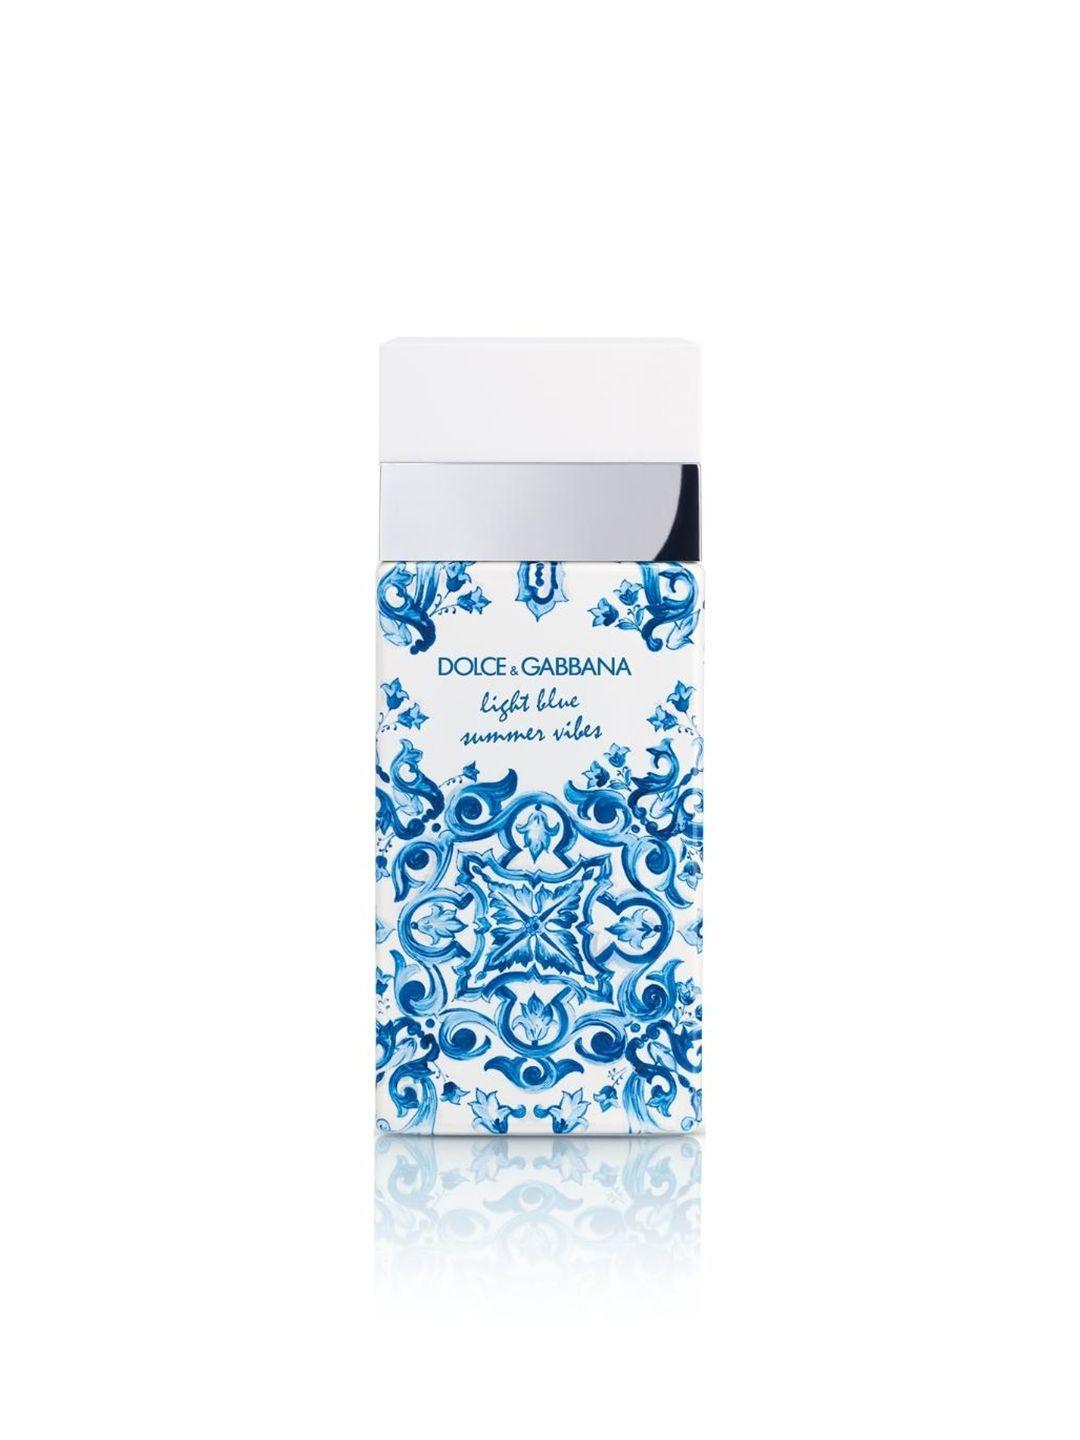 dolce & gabbana women light blue summer vibes eau de toilette - 100 ml